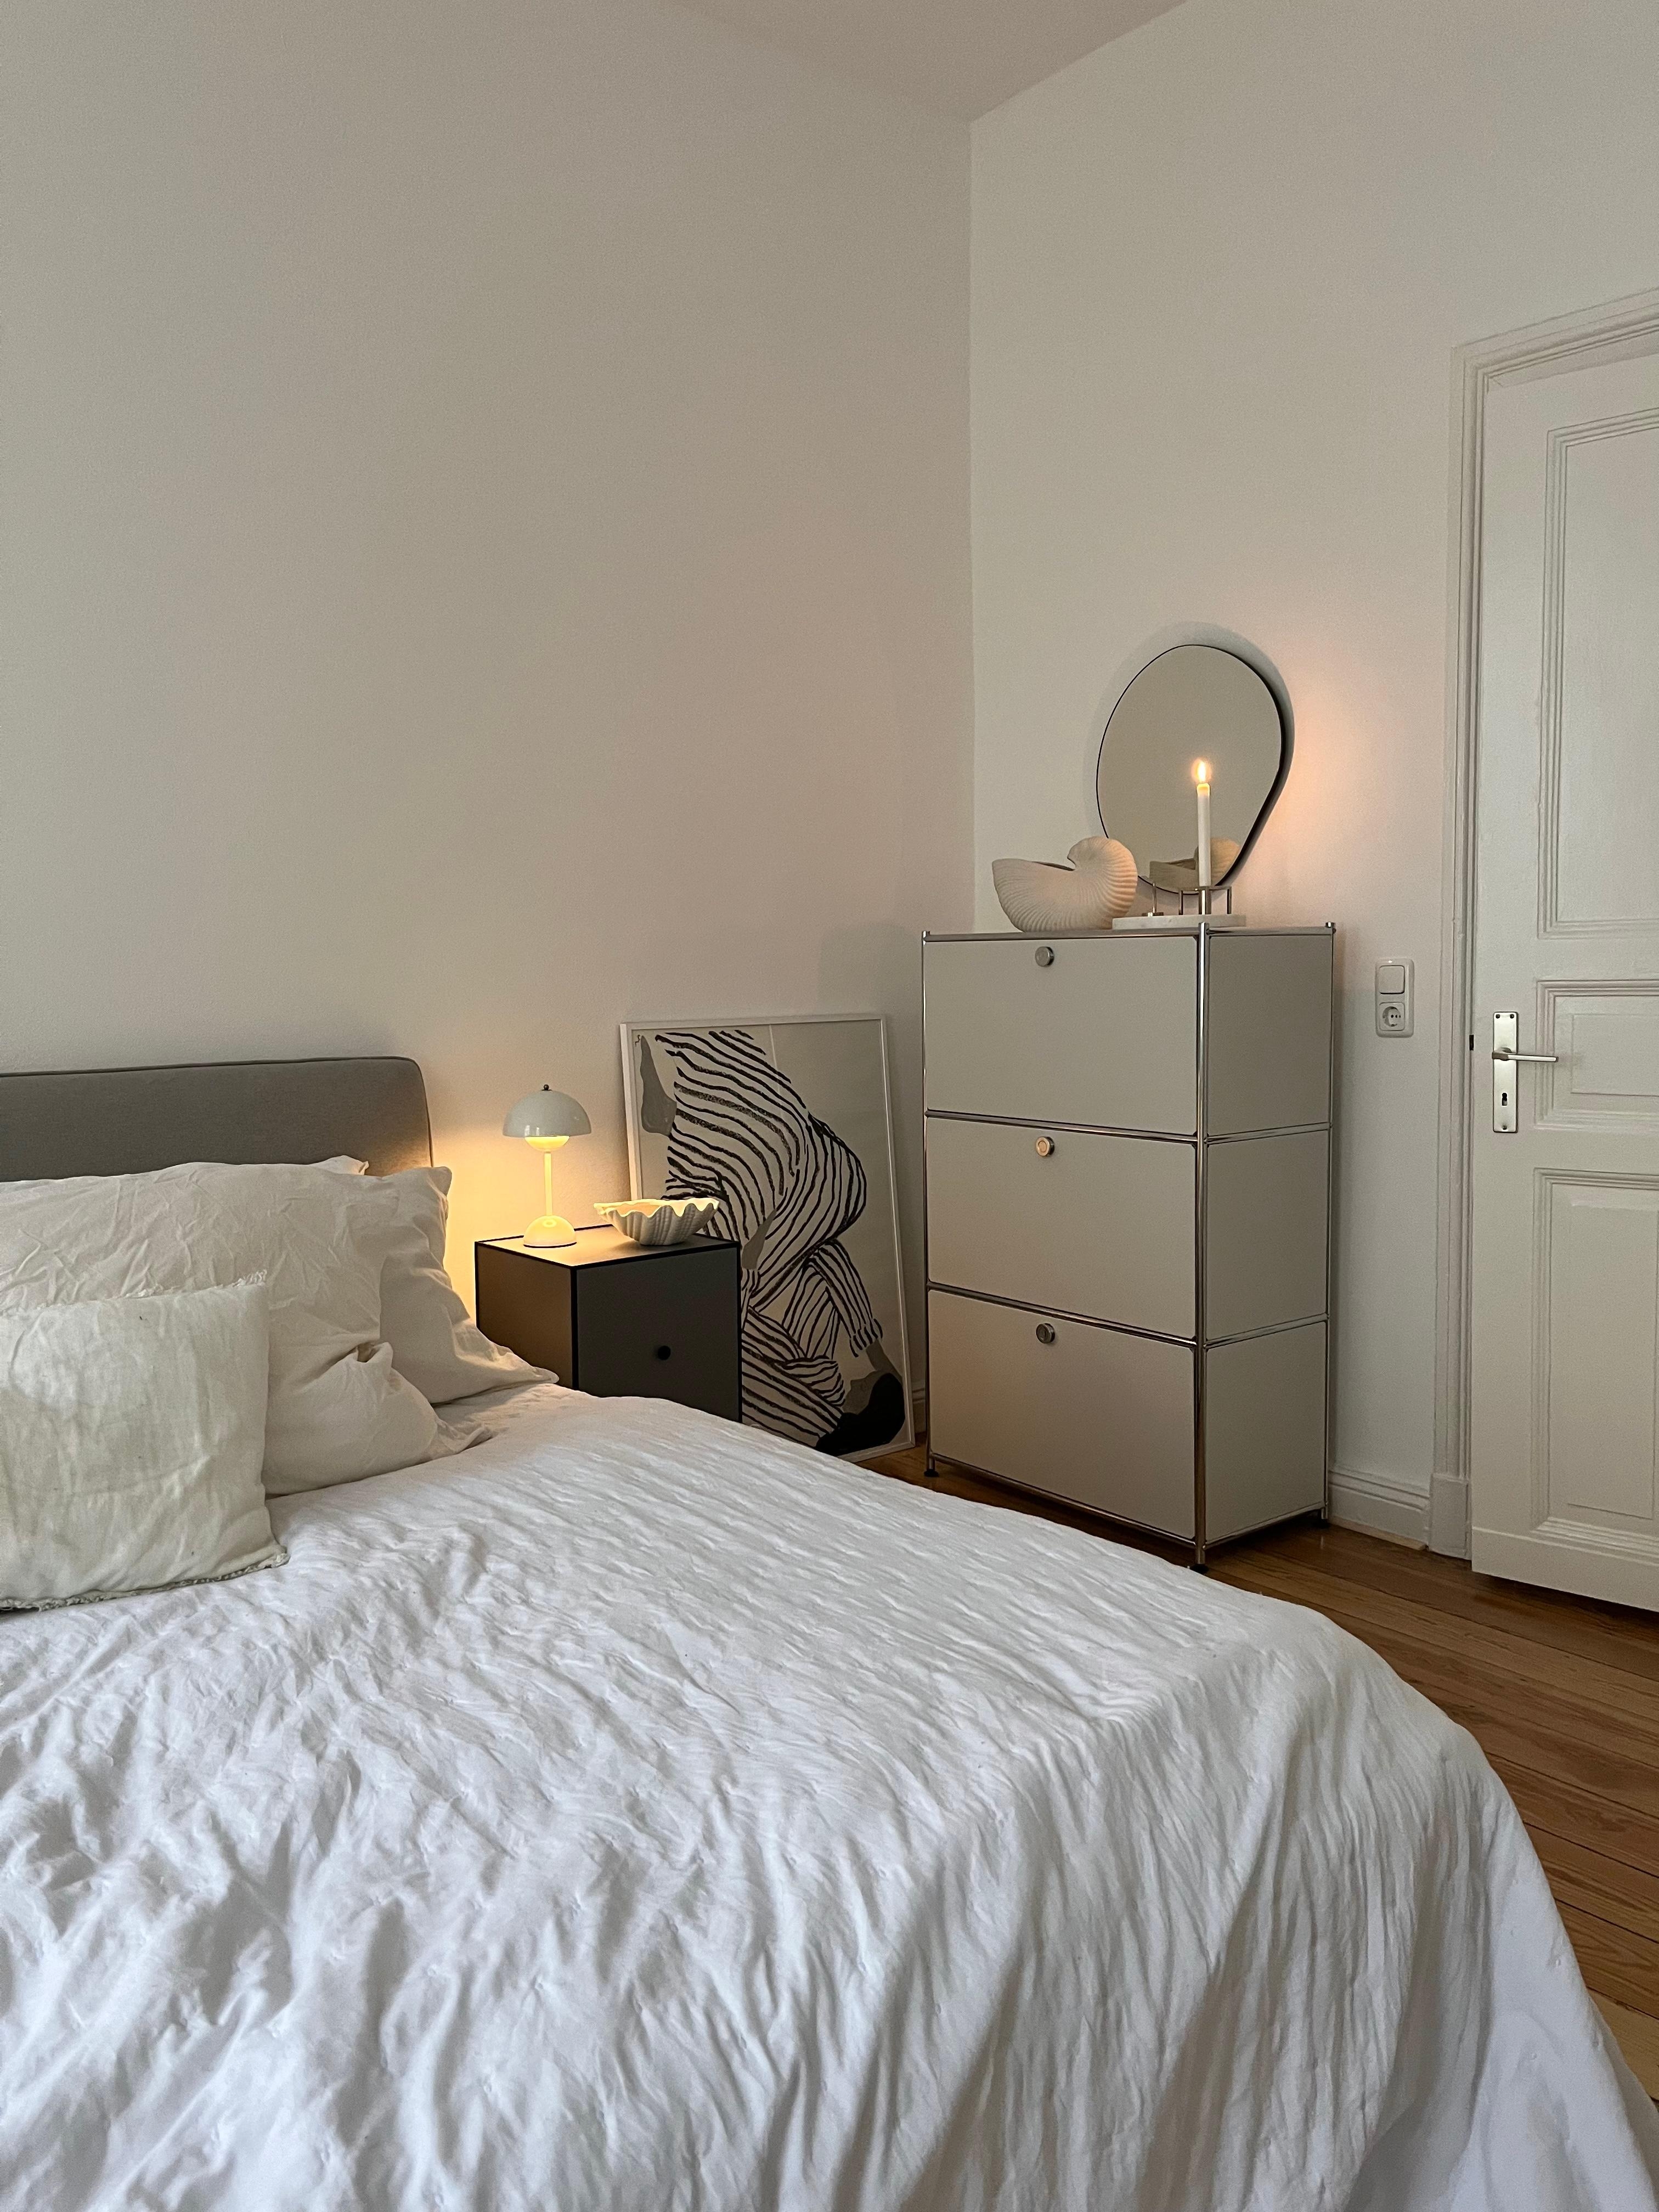 #schlafzimmer #altbauwohnung #skandinavischwohnen #danishdesign #designklassiker 